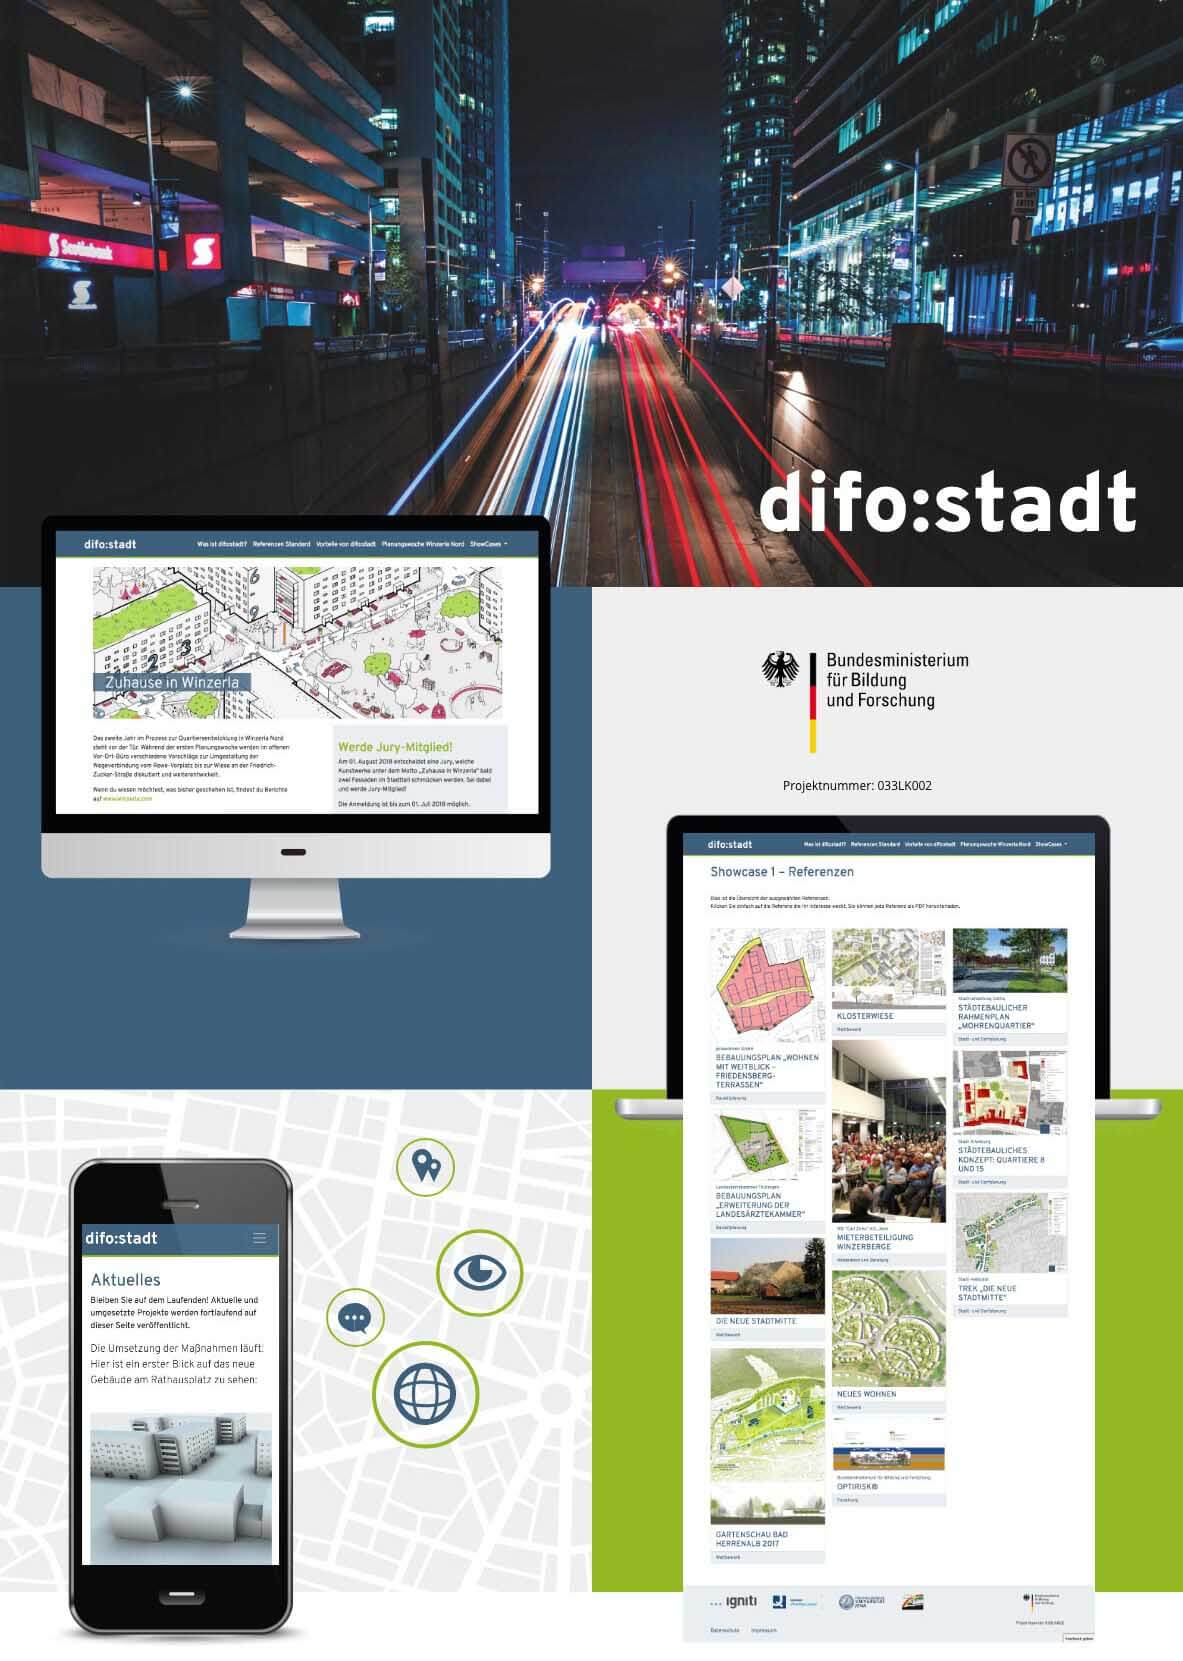 difo:stadt - Digitales Forum für Stadtentwicklung